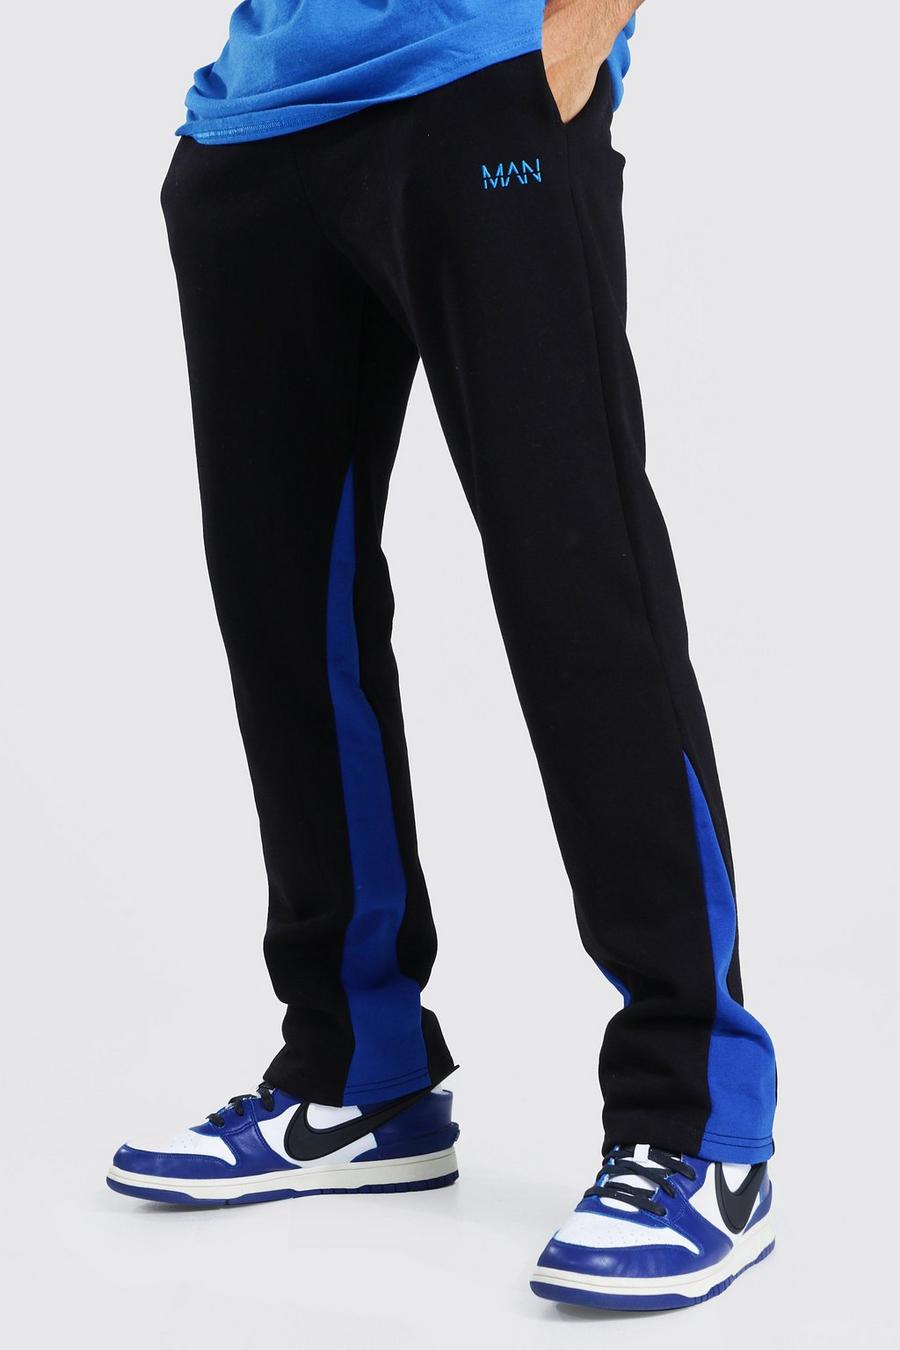 שחור מכנסי ריצה עם פאנל טריז בצבע מנוגד וכיתוב Original Man image number 1